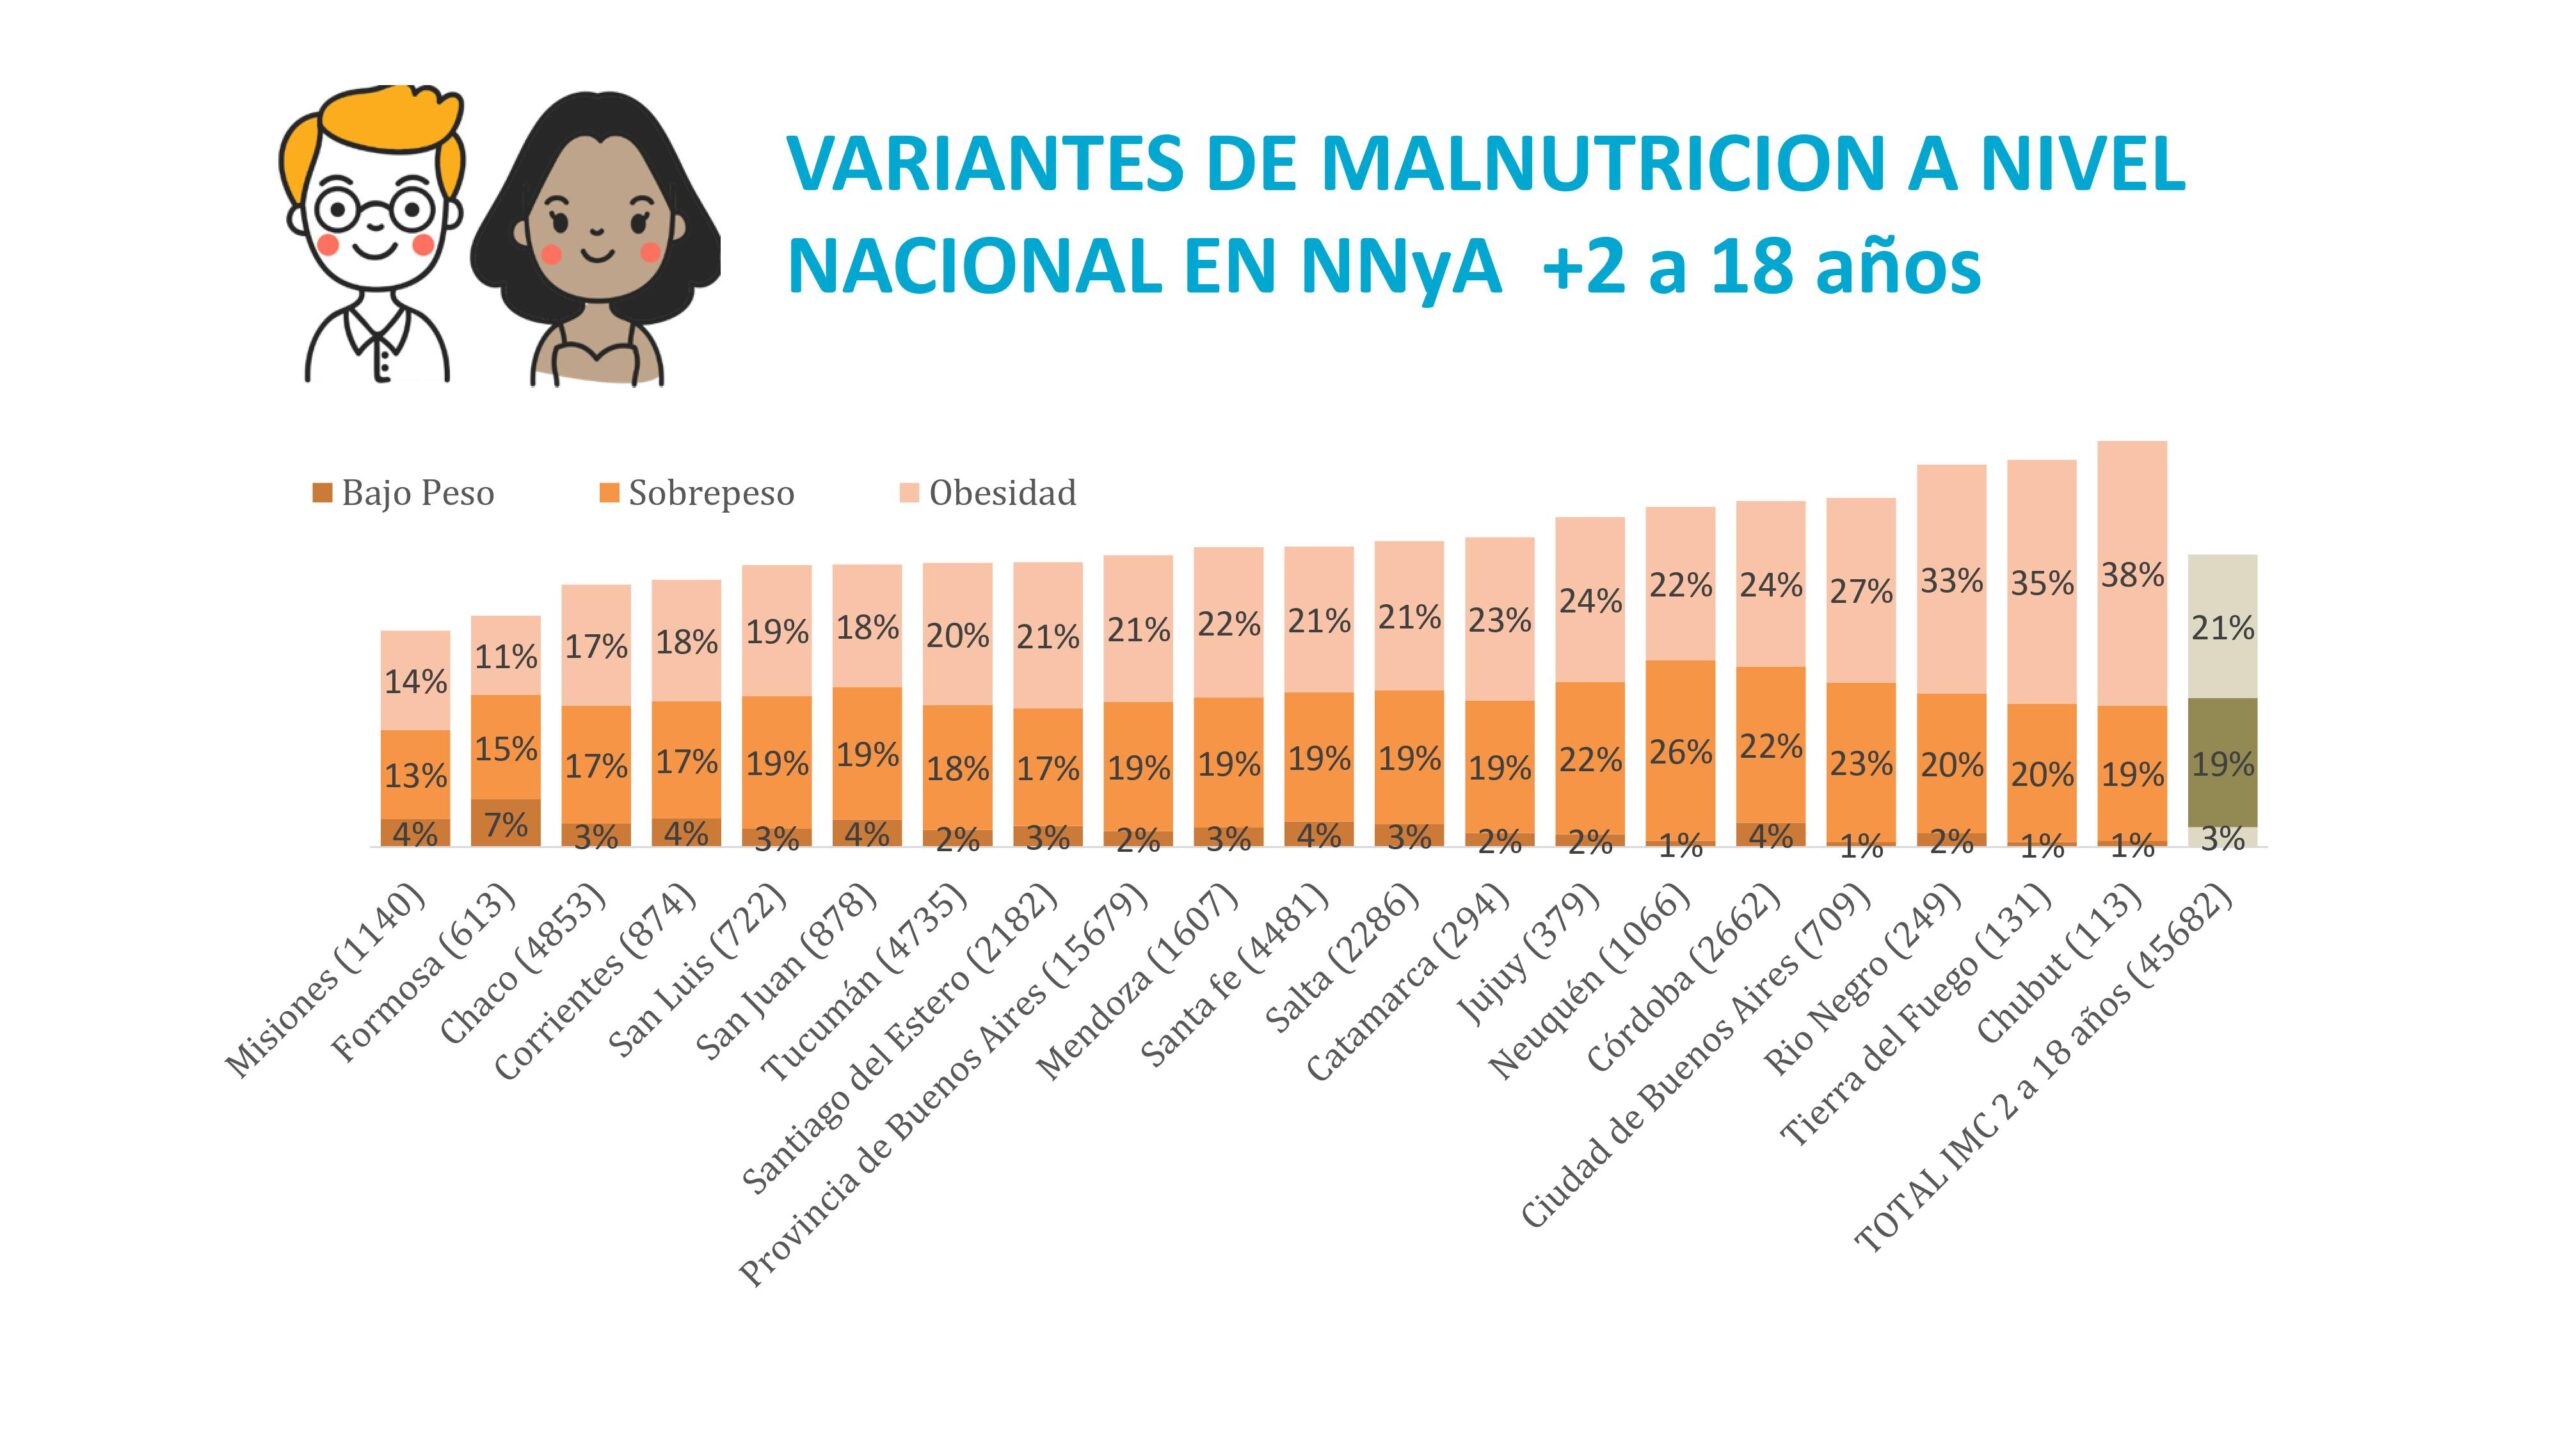 El 42,1% de les niñes censades presenta malnutrición